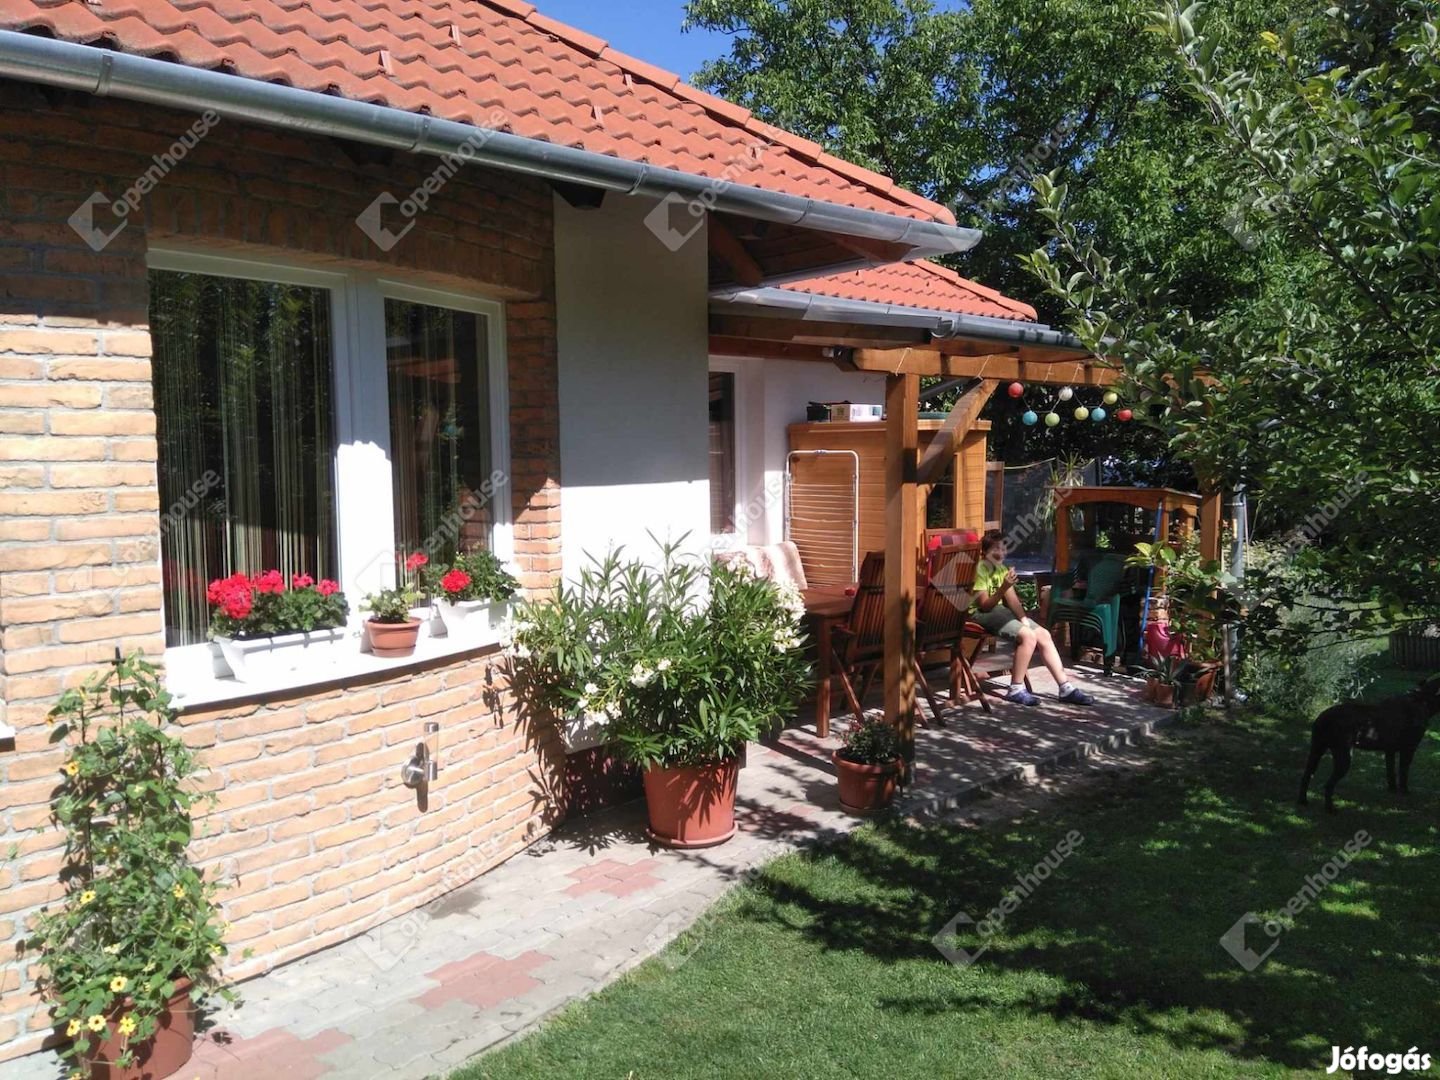 Sopron, eladó családi ház